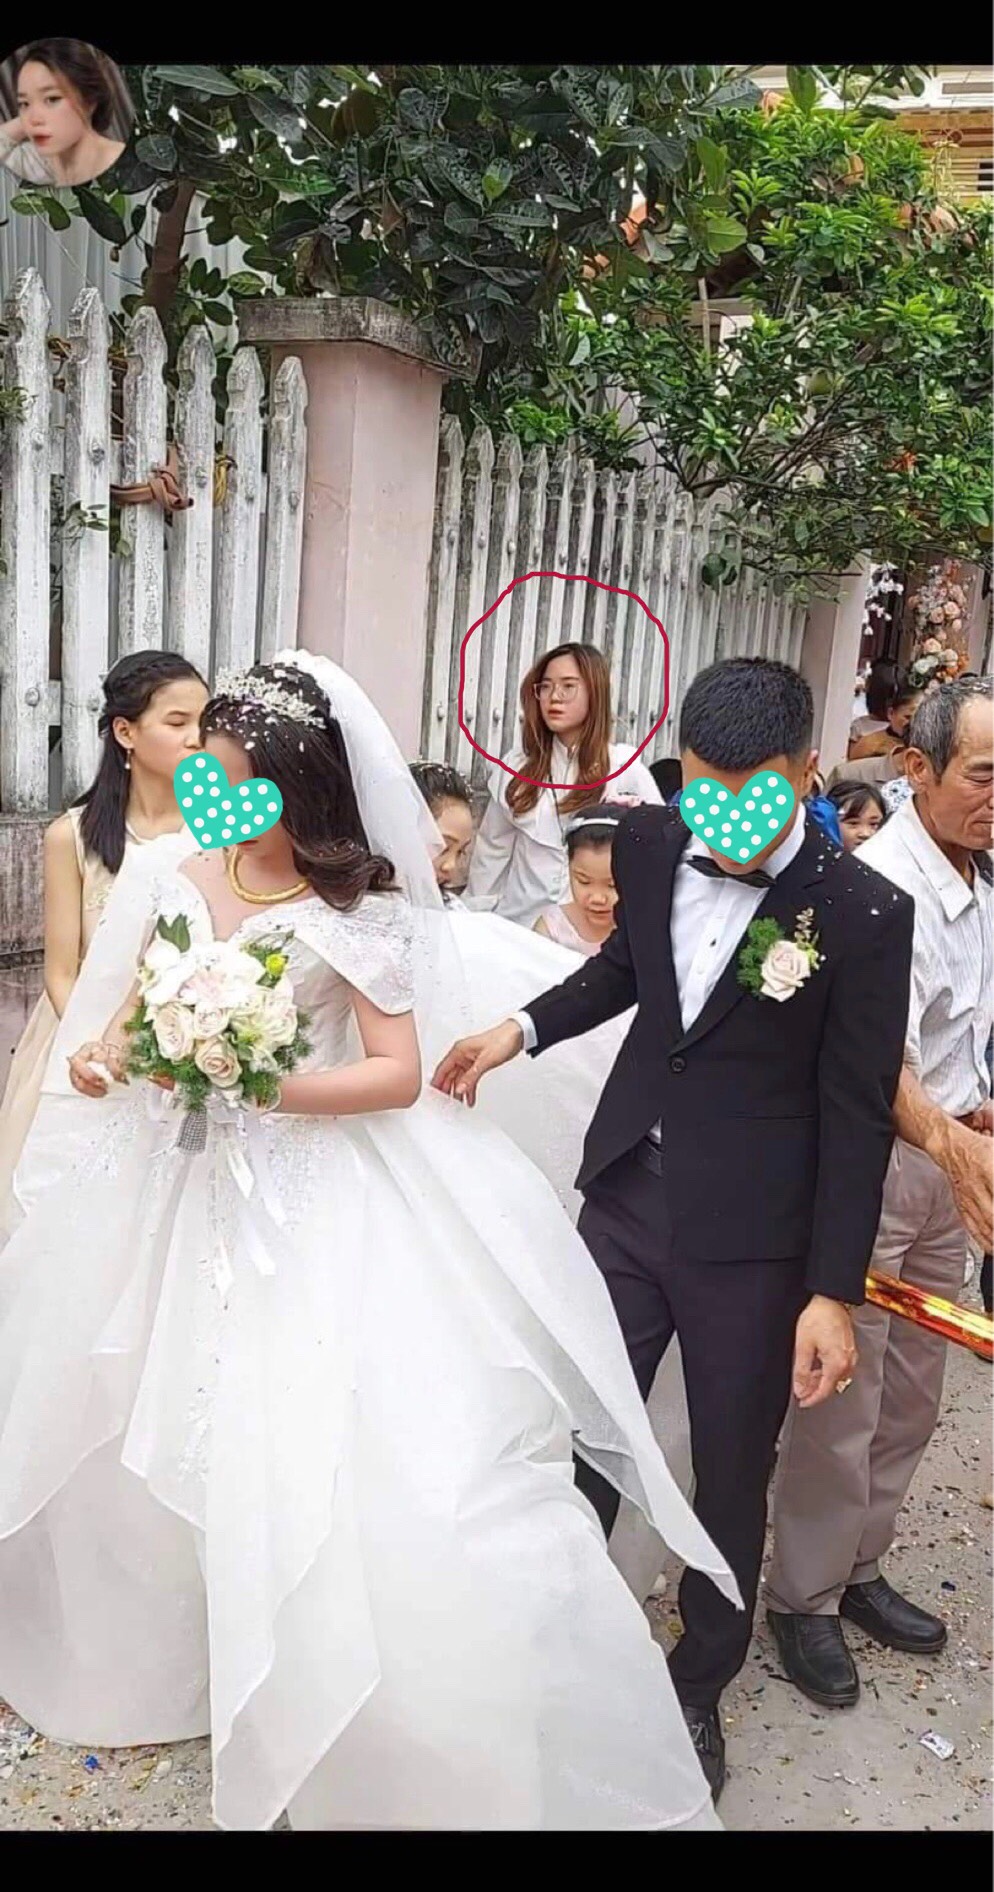 Đi đám cưới bị chụp ảnh dìm, cô gái tìm thủ phạm chụp lén để hỏi tội, không ngờ bắt được anh công an - Ảnh 2.